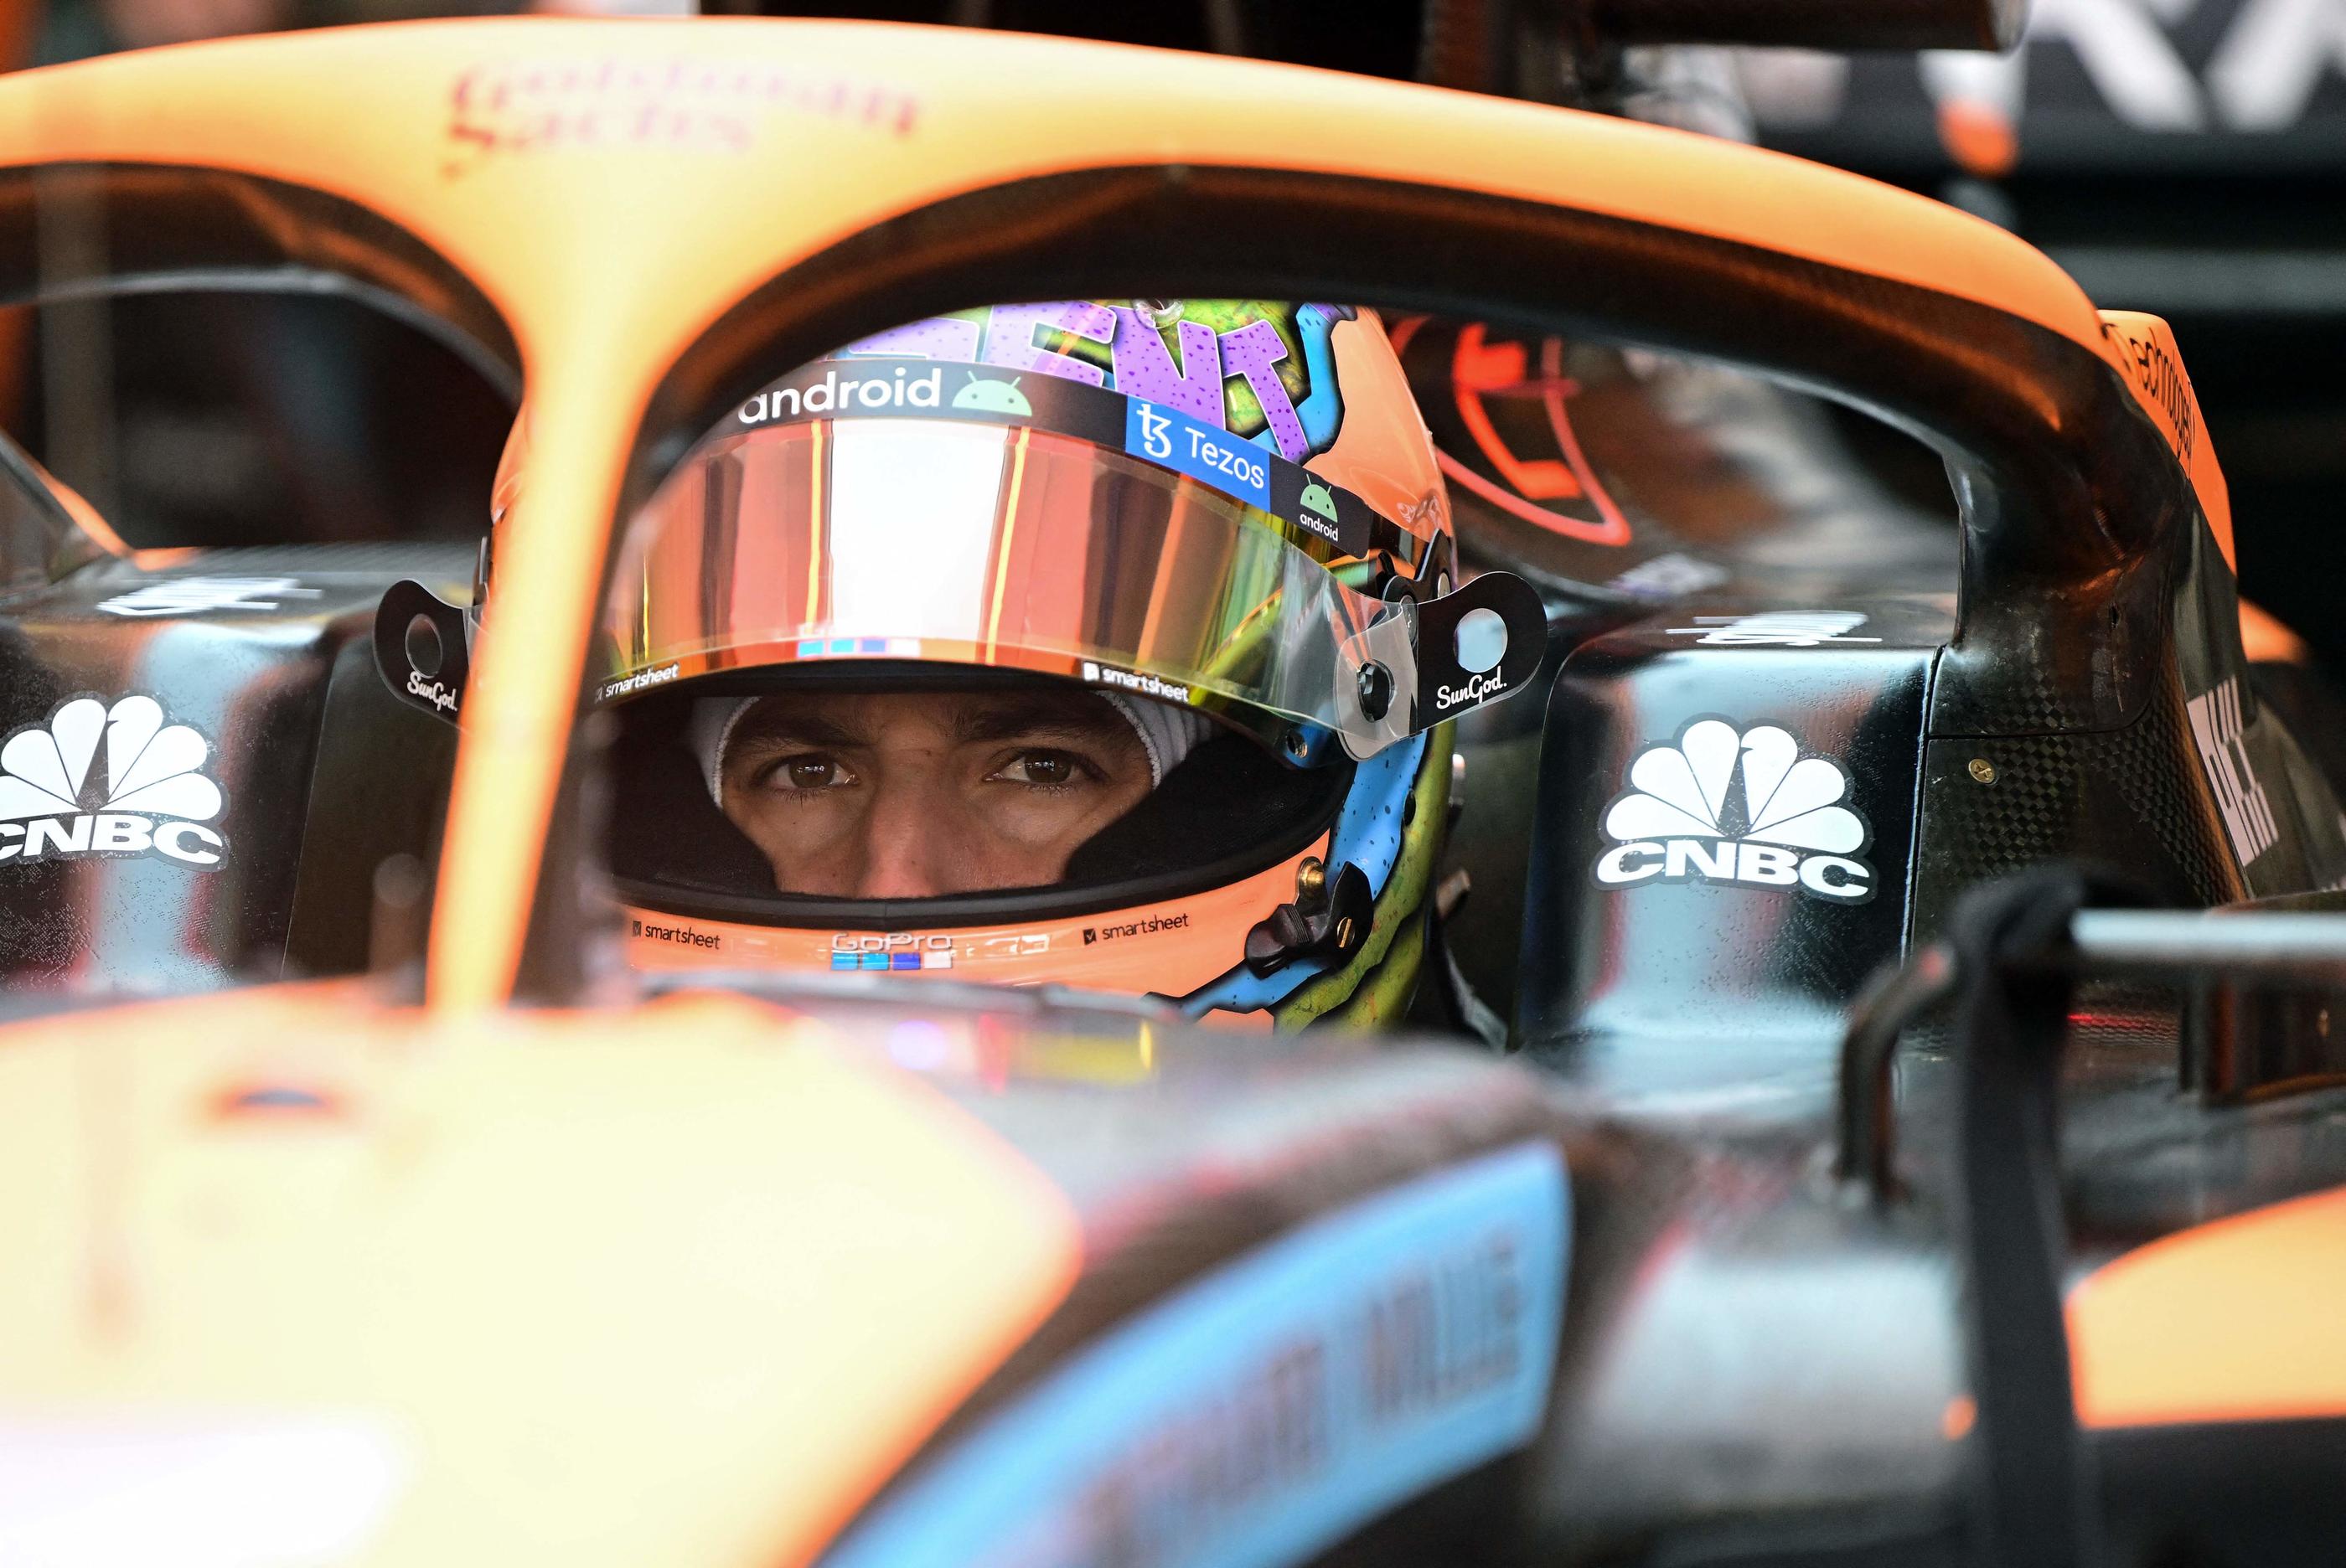 L'Australien Daniel Ricciardo, 33 ans, ne sera plus pilote McLaren la saison prochaine. Son jeune compatriote Oscar Piastri, 21 ans, est pressenti pour le remplacer. AFP/Jure Makovec